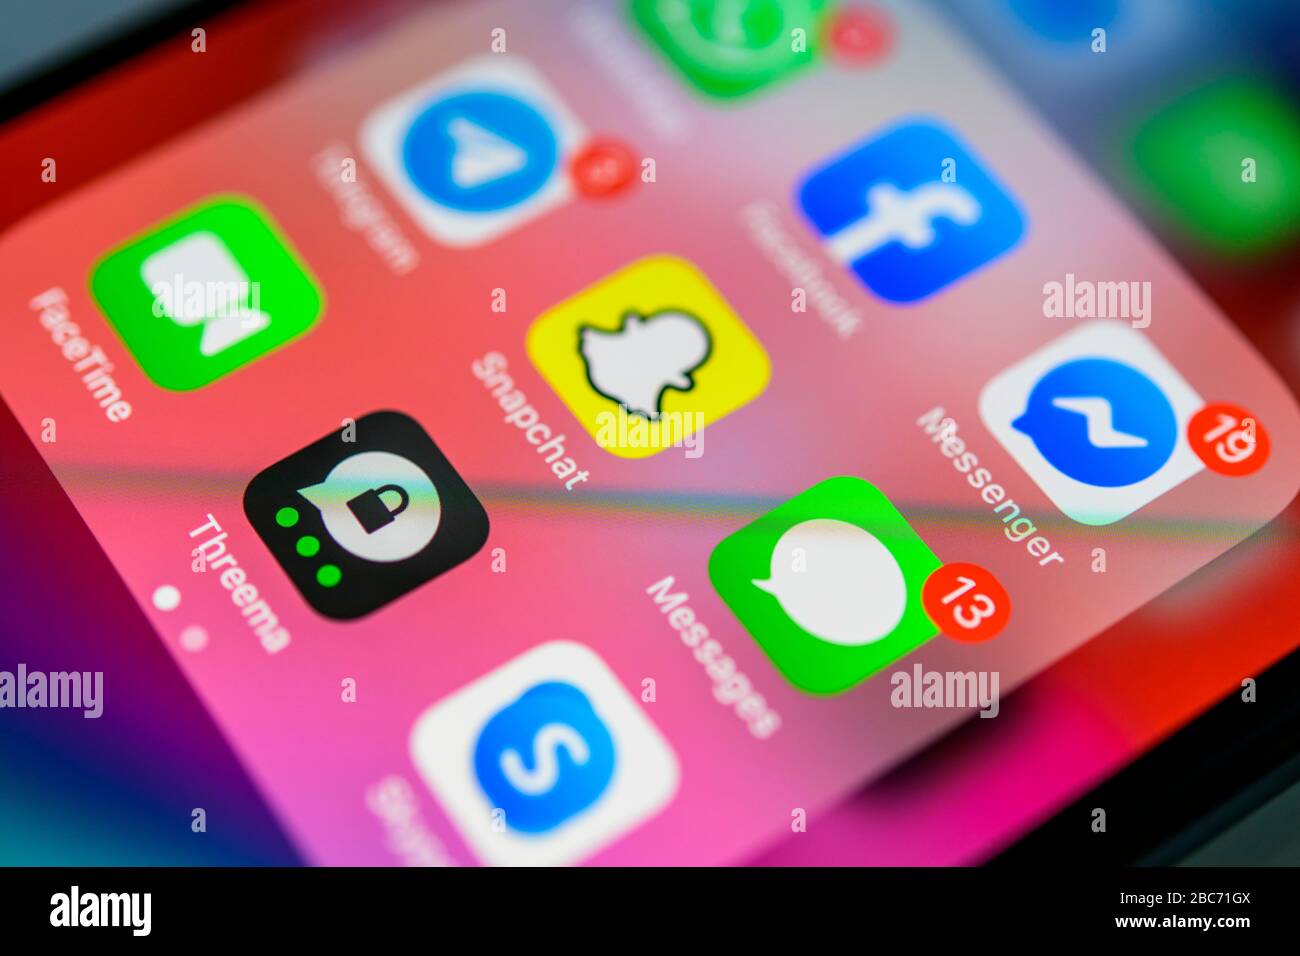 Facebook, Snapchat und WhatsApp, soziale Apps, App-Symbole, Anzeige auf dem Display von Handy, Smartphone, Detail, Vollformat Stockfoto